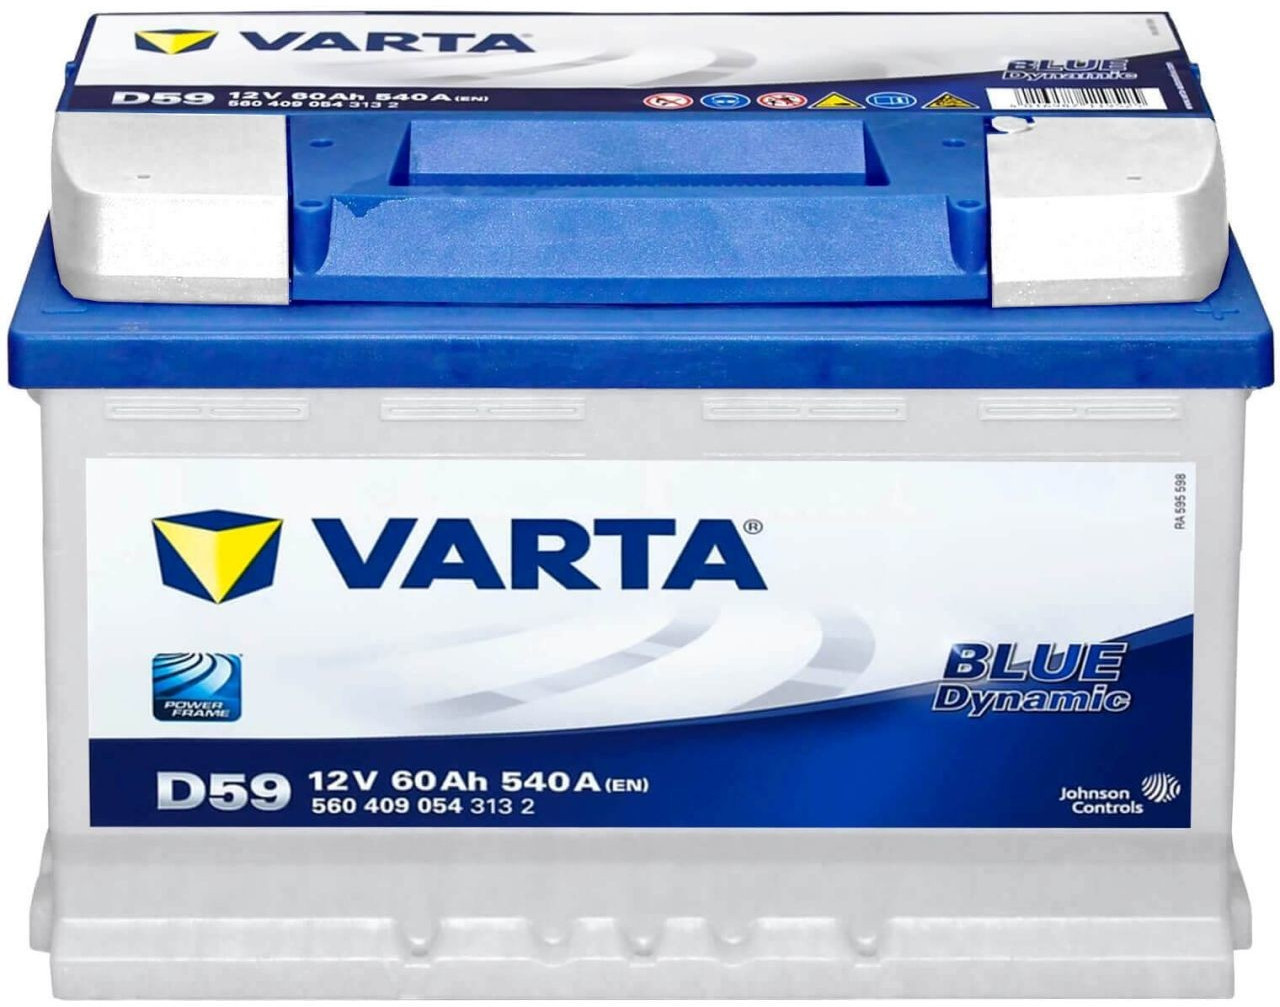 BATERIA VARTA 60AH / 540A (EN) +D D59 GAMA BLUE DYNAMIC 2 AÑOS DE GARANTIA  COCHE